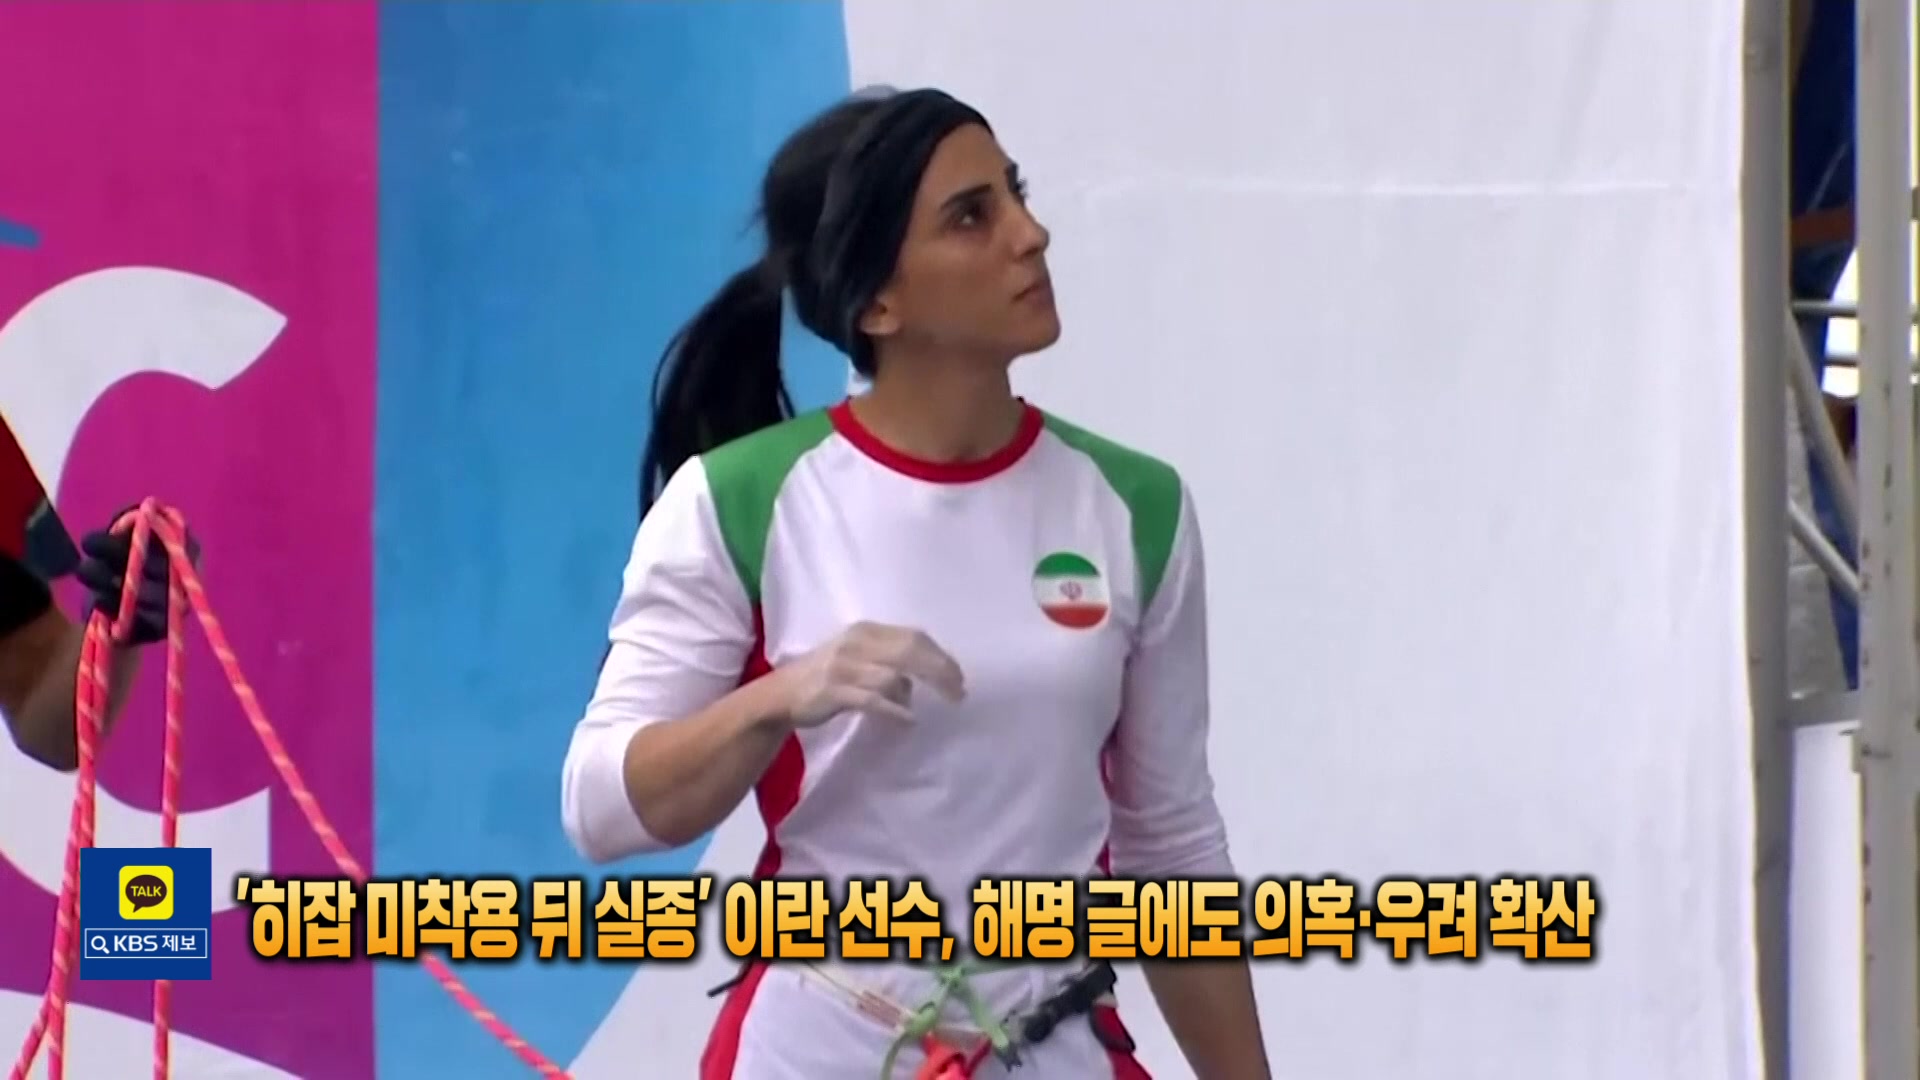 [톡톡 지구촌] ‘히잡 미착용 뒤 실종’ 이란 선수, 해명 글에도 의혹·우려 확산